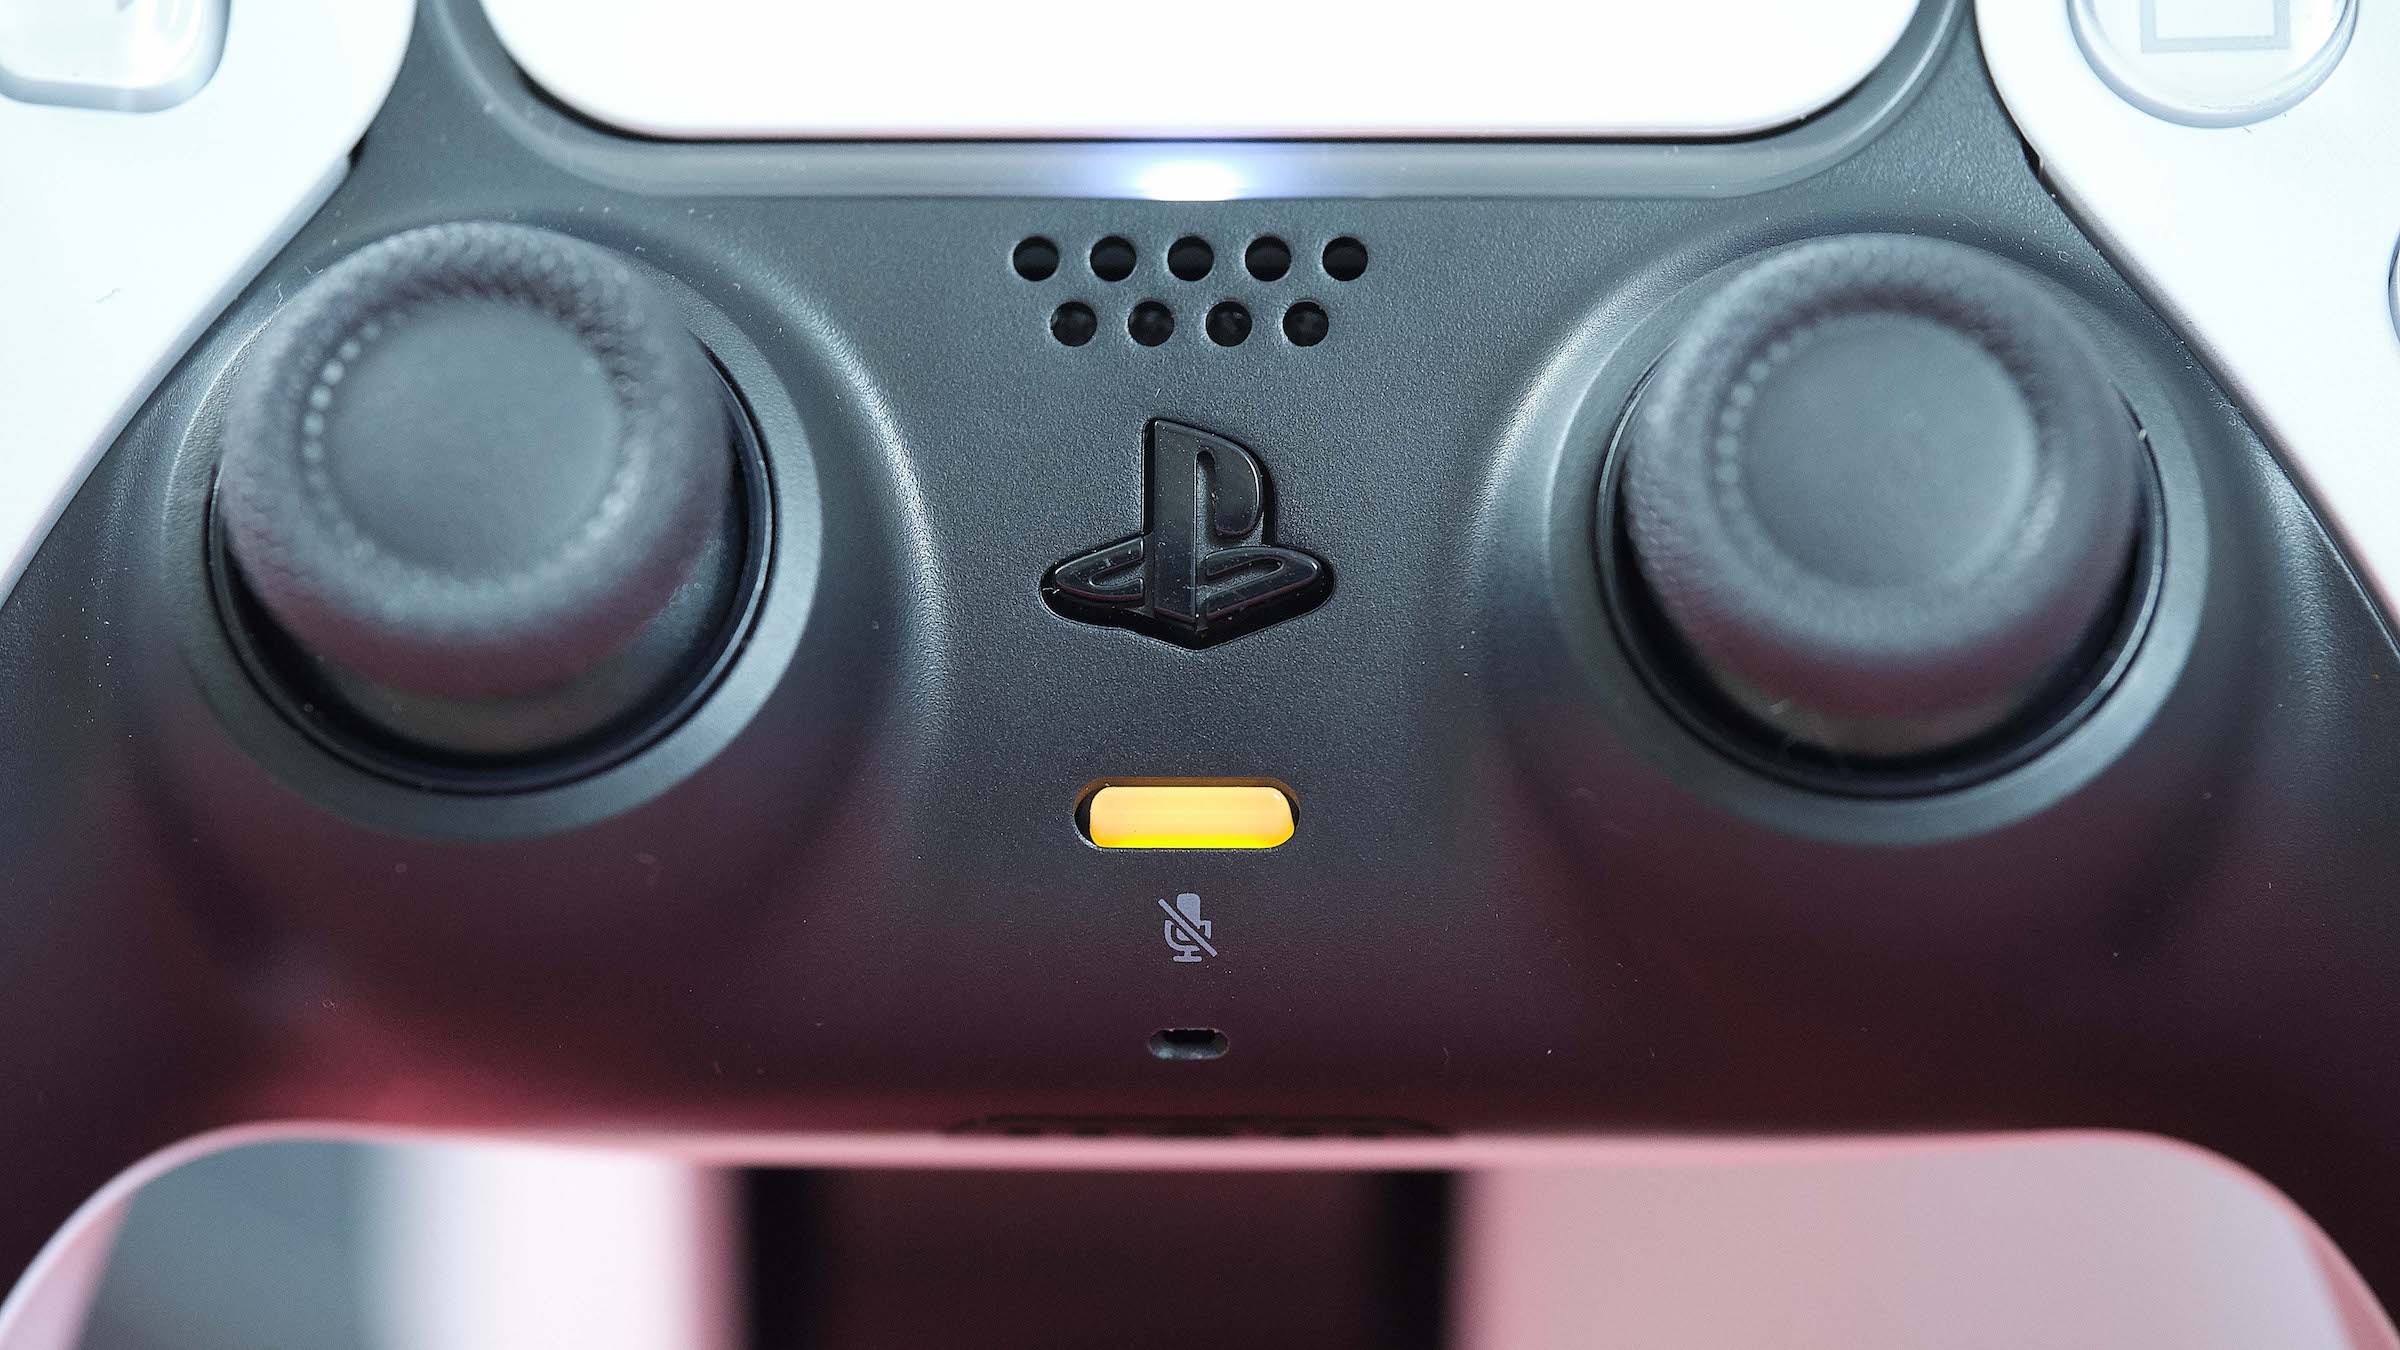 Cómo usar el mando DualShock de PS4 o DualSense de PS5 en tu PC | Tecnología - ComputerHoy.com